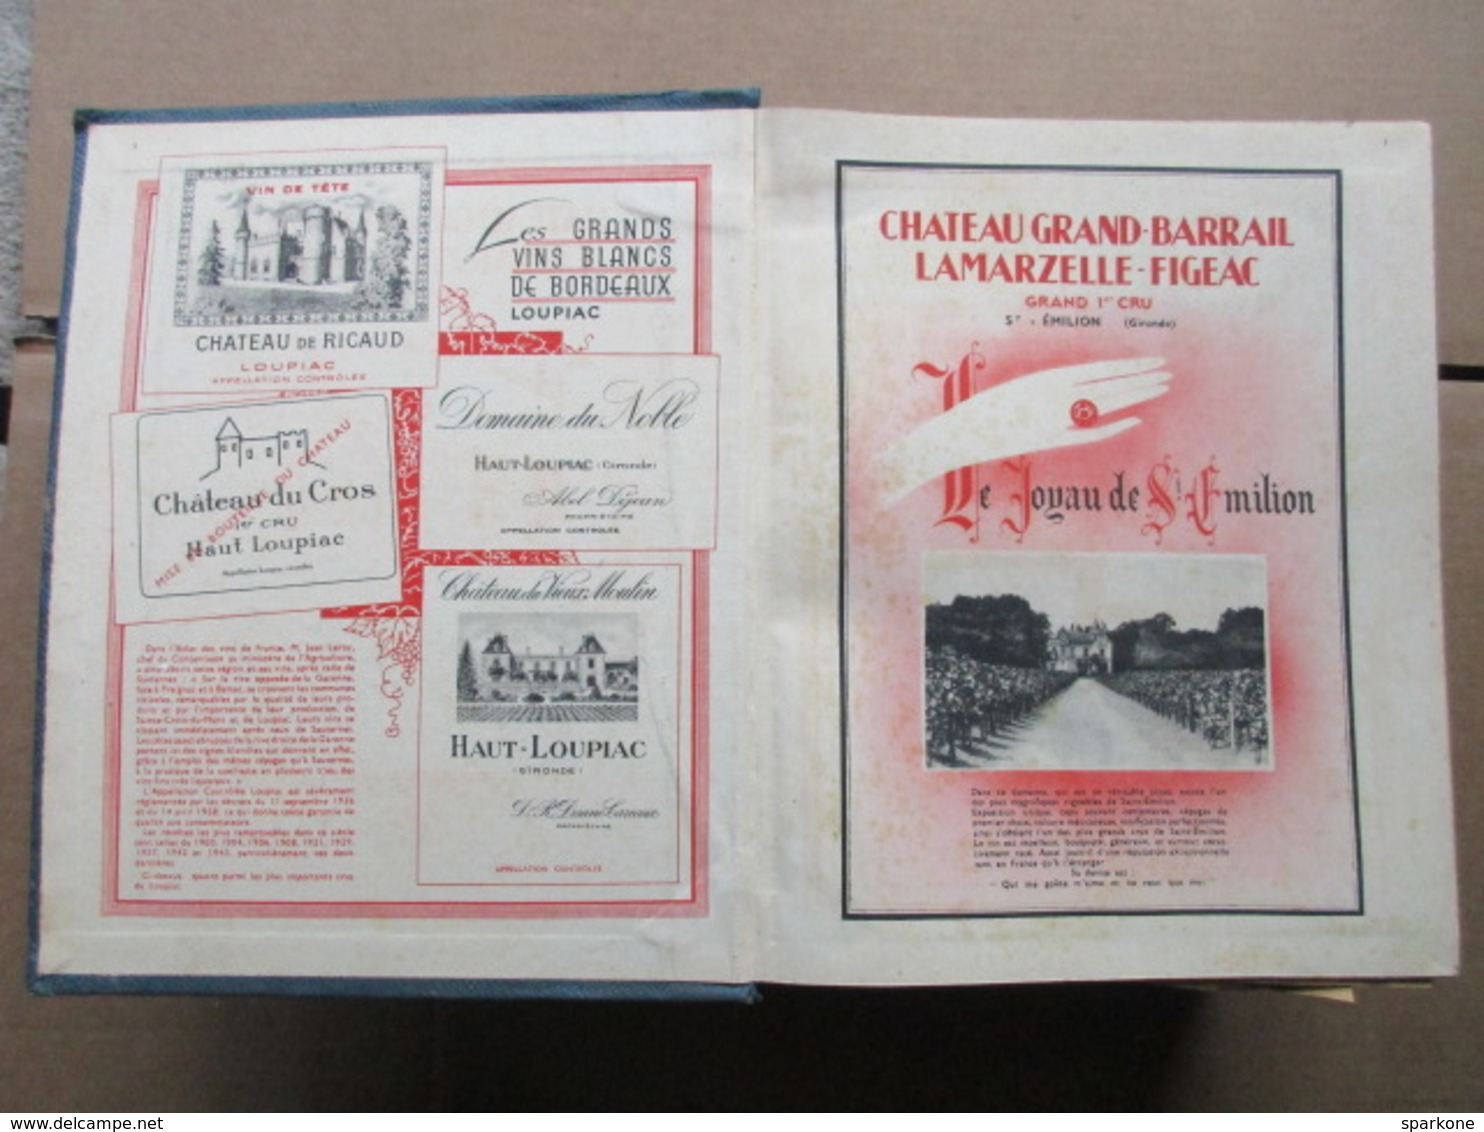 Annuaire du Commerce / Didot-Bottin / Tome II / Professions Paris N à Z de 1947